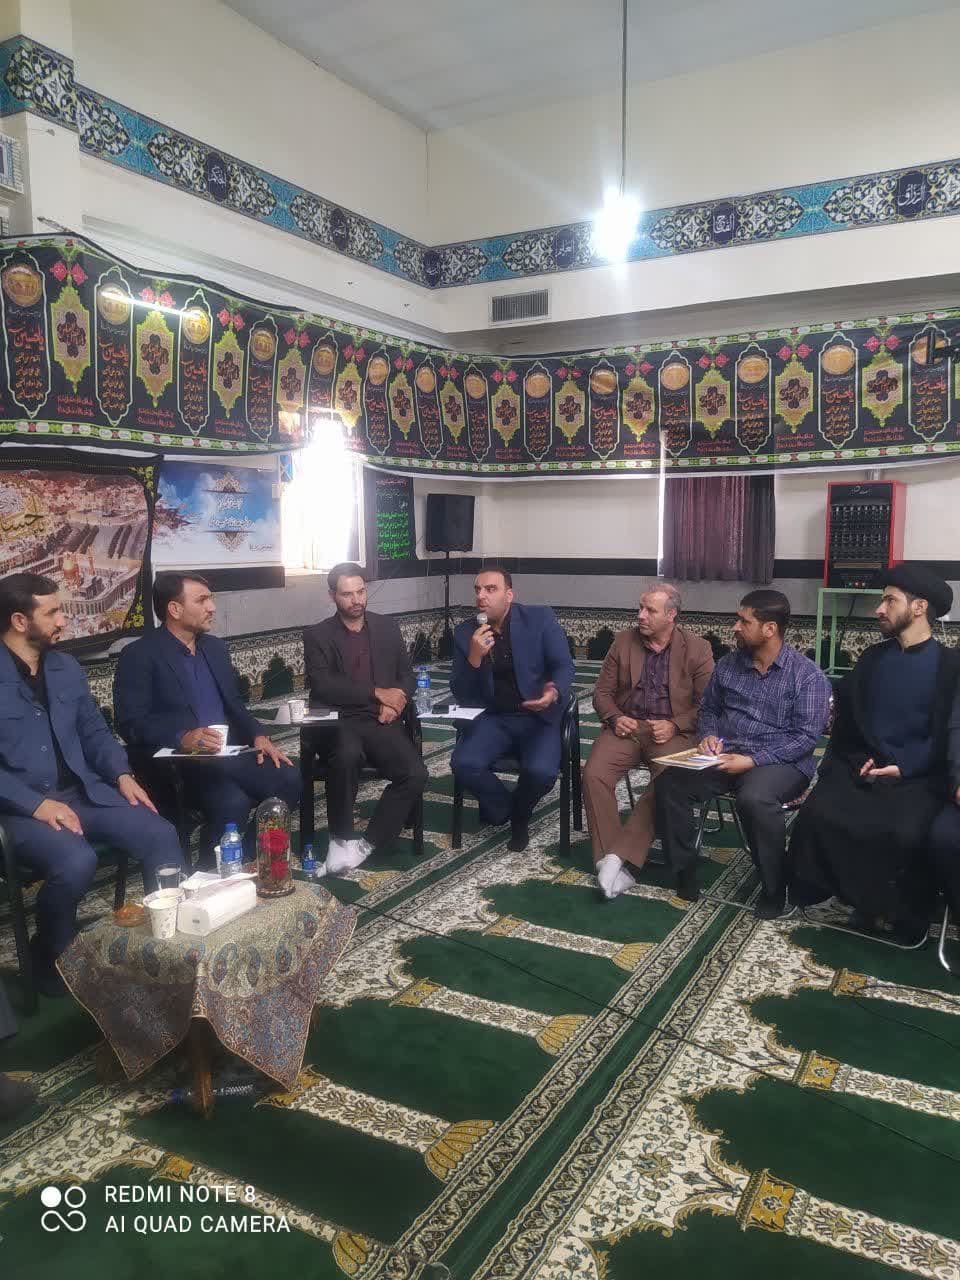 برگزاری اولین نشست تخصصی "هفته جهادی محله محور" در مسکن مهر امام خمینی(ره)